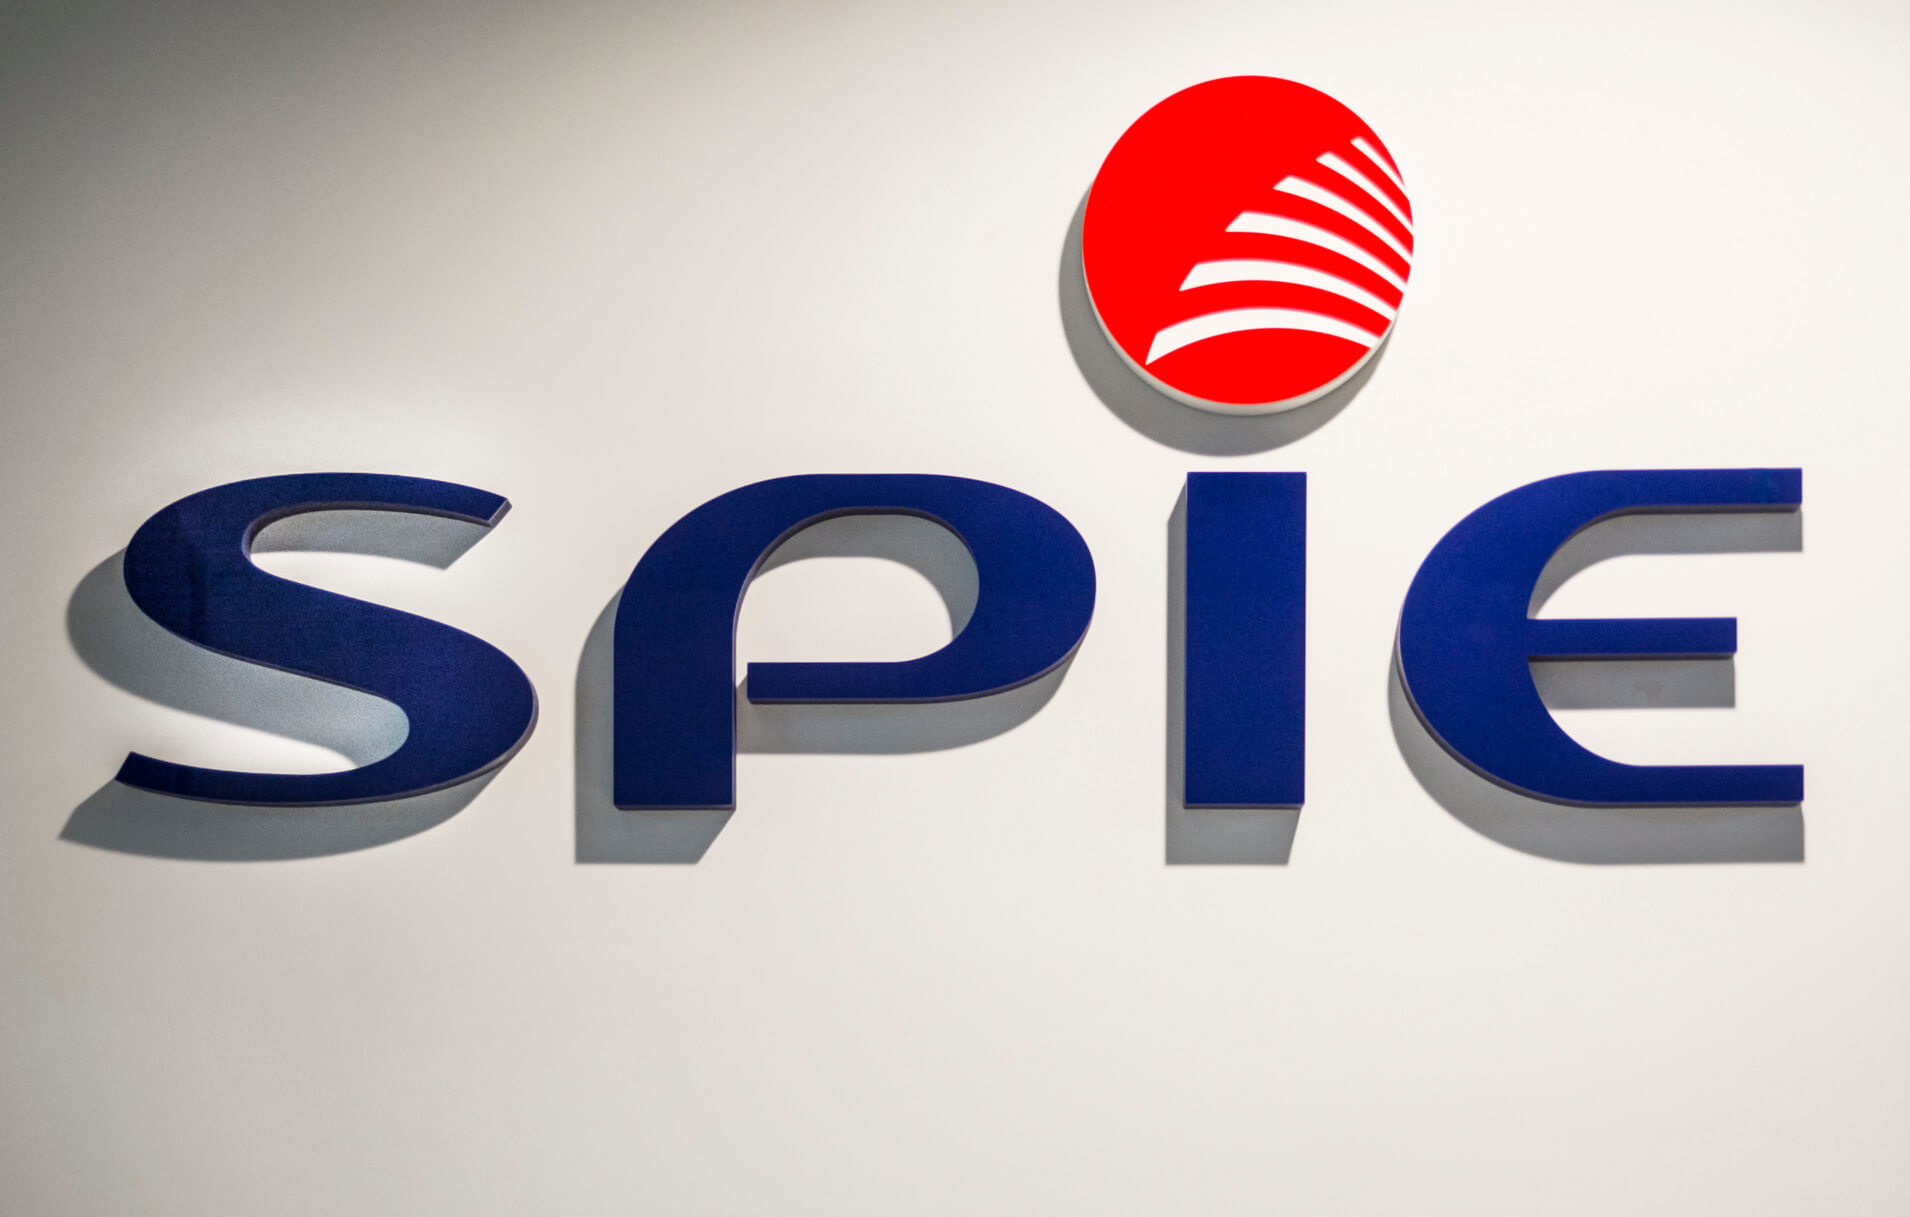 Spie - Spie - logo i litery przestrzenne 3D umieszczone na ścianie wewnątrz budynku